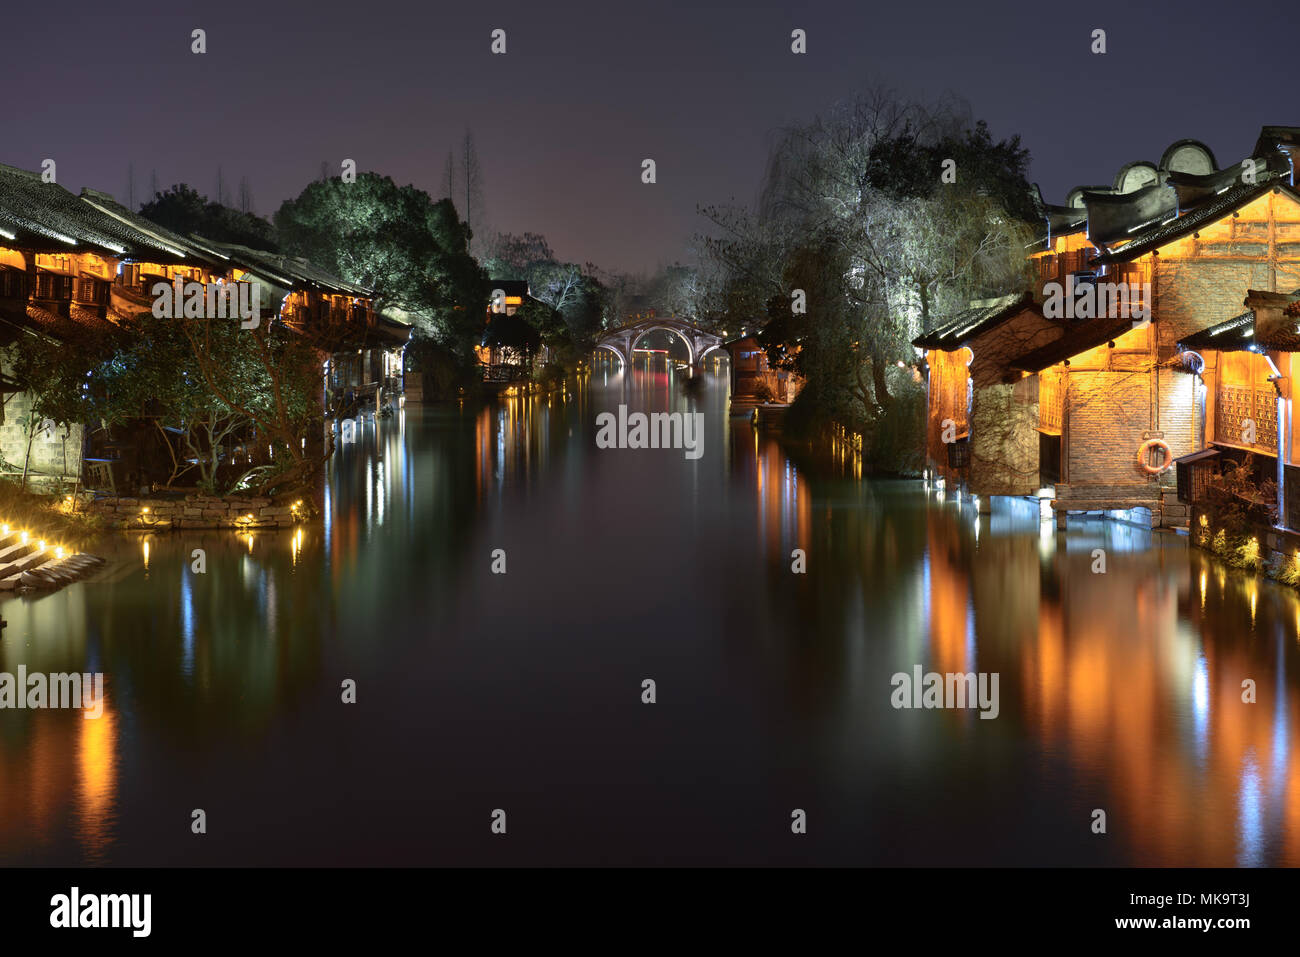 Nacht Blick auf das alte Gebäude am Wasser in Wuzhen. Wuzhen - historische alte Wasser Stadt, Teil von Friedrichshafen in der nördlichen Provinz Zhejiang Provi entfernt Stockfoto